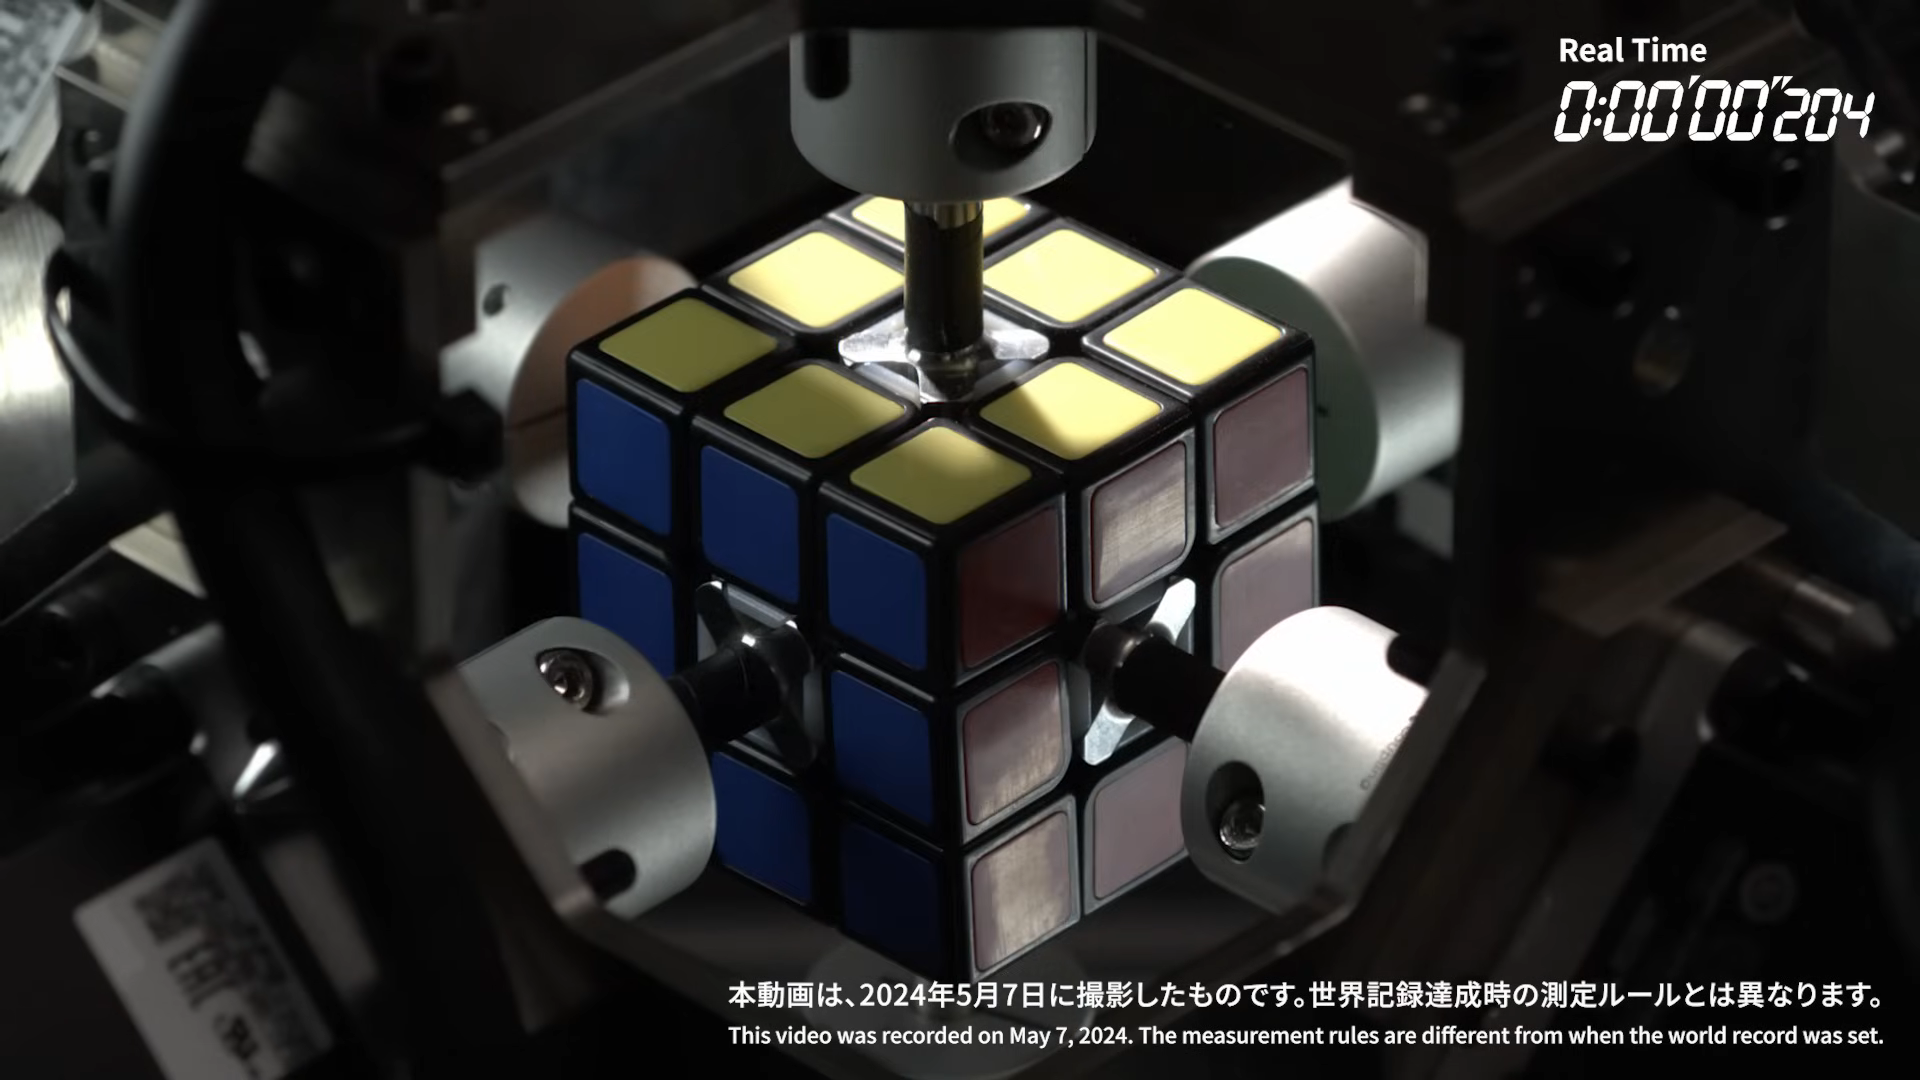 【やじうまPC Watch】 ルービックキューブを0.305秒で解くロボット、三菱電機が開発 